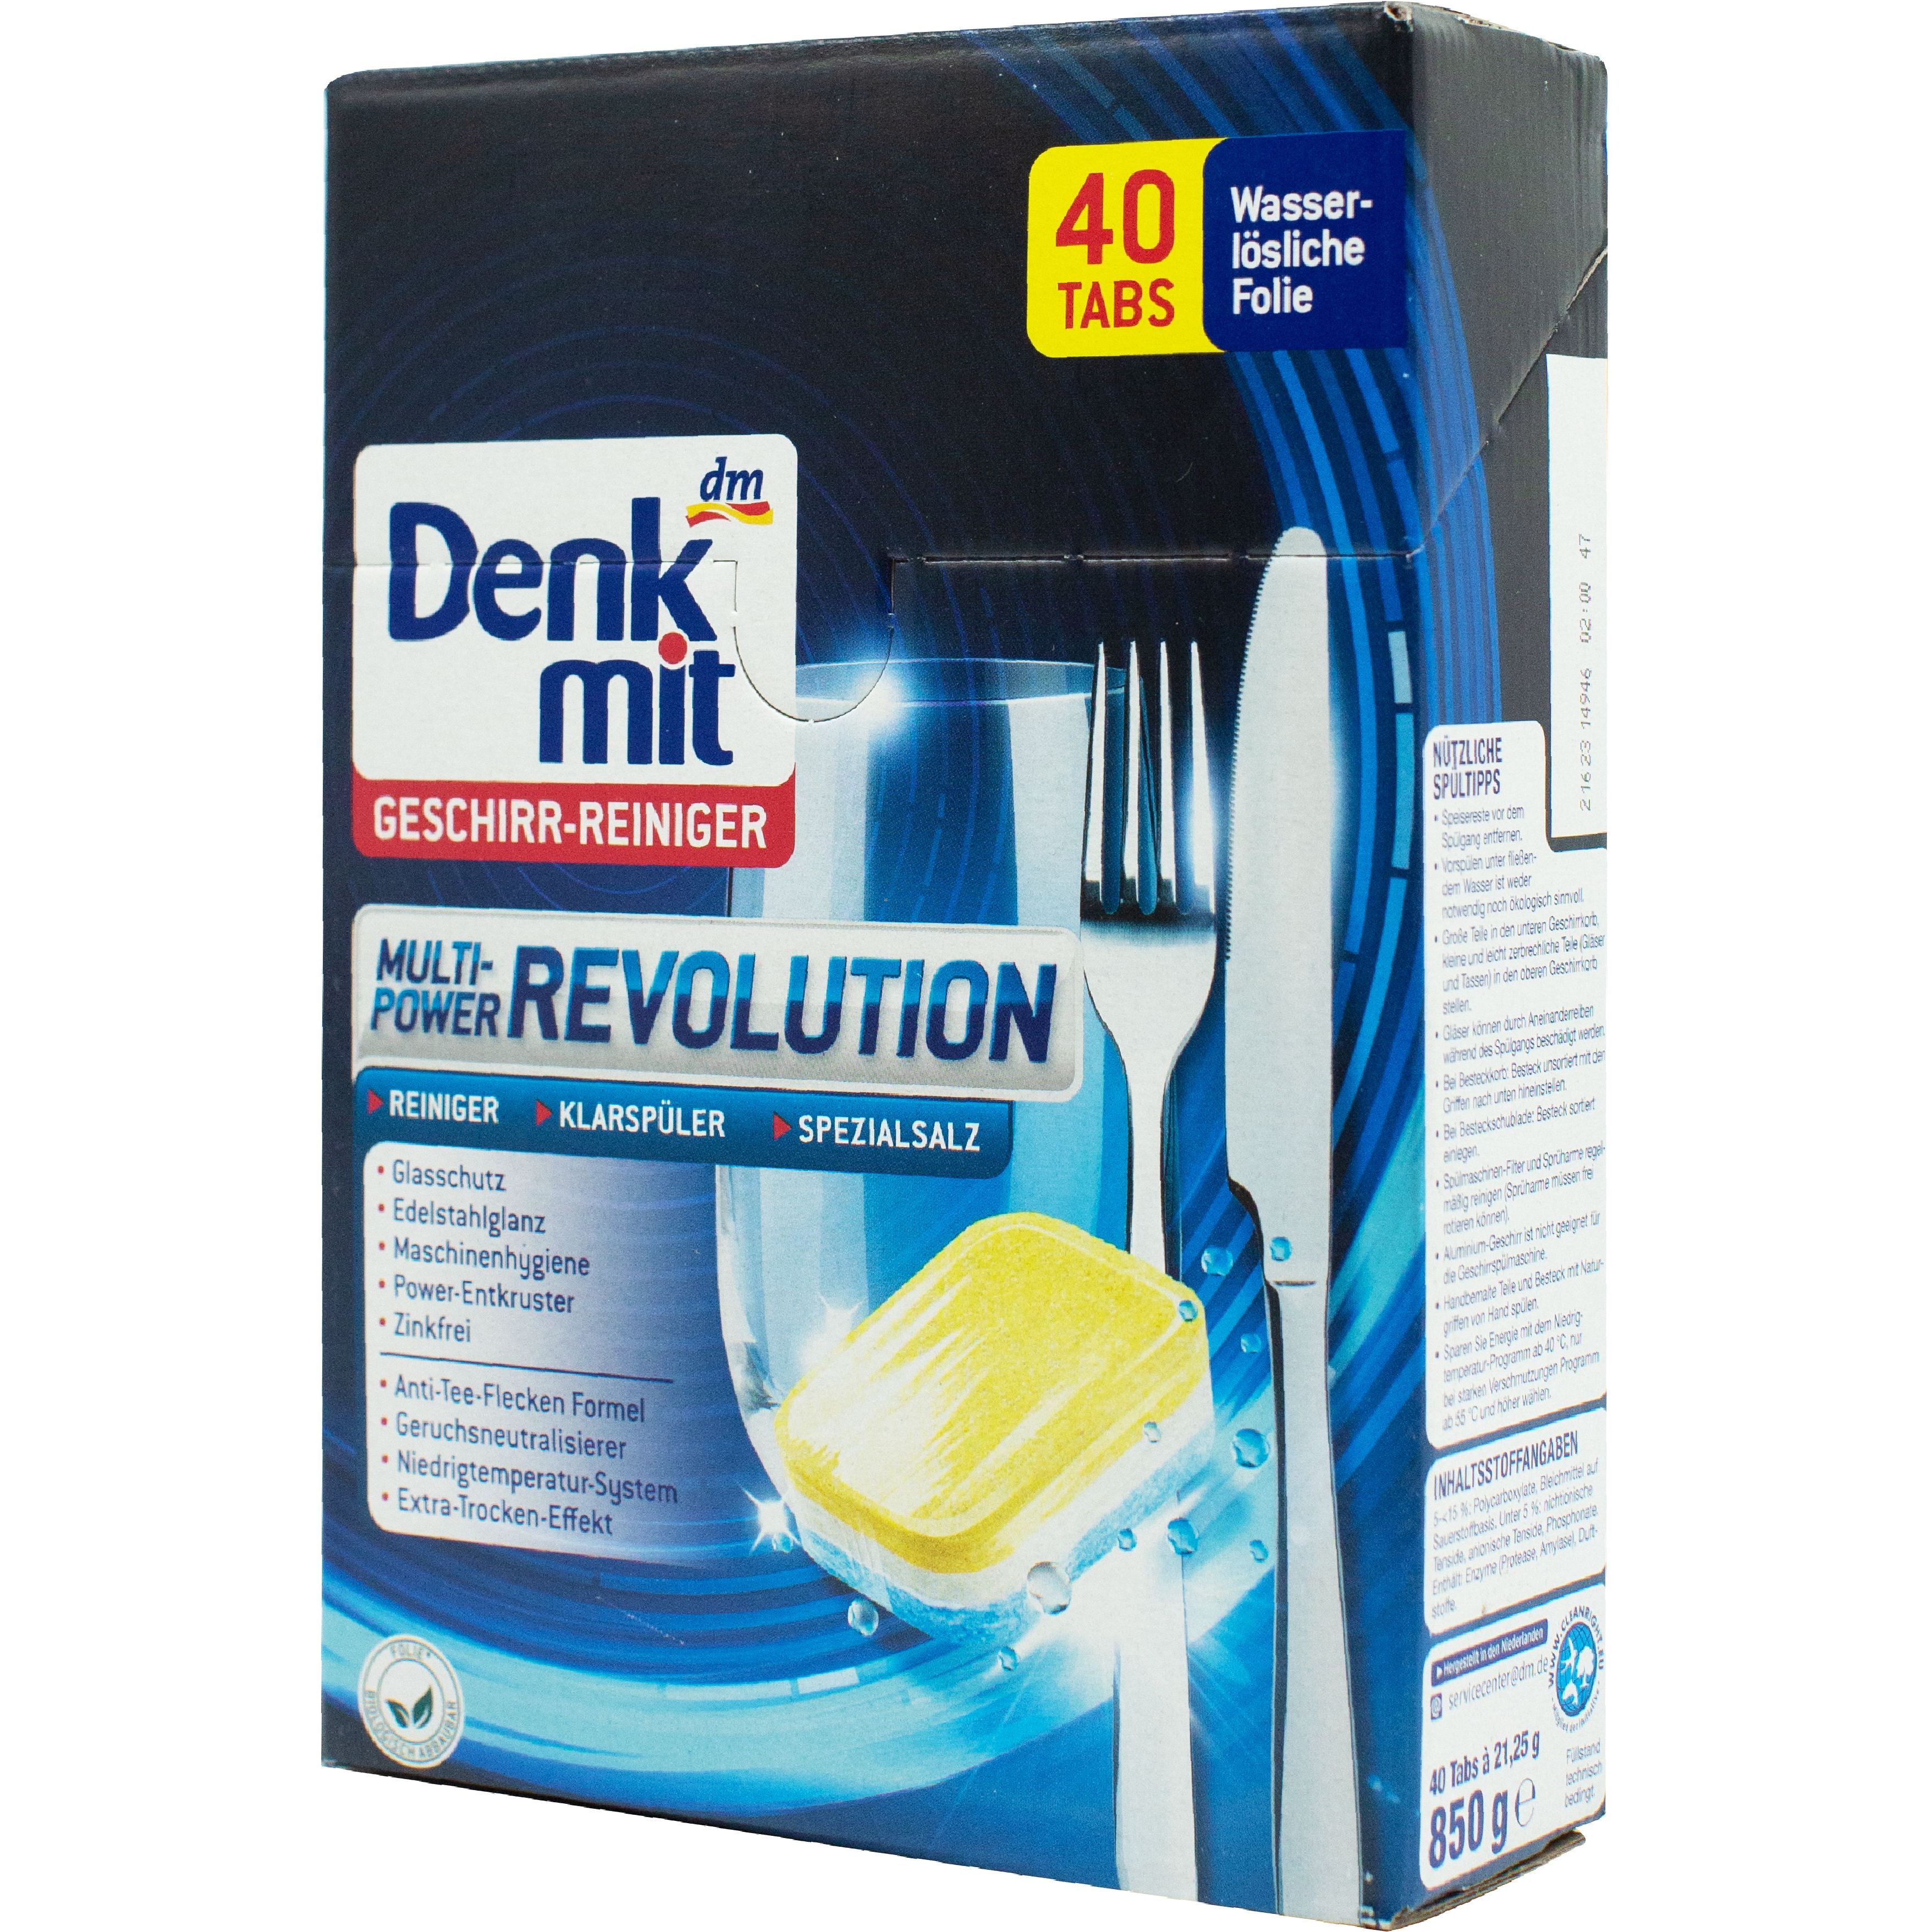 Таблетки для посудомоечной машины Denkmit Multi-Power Revolution 40 шт. - фото 2